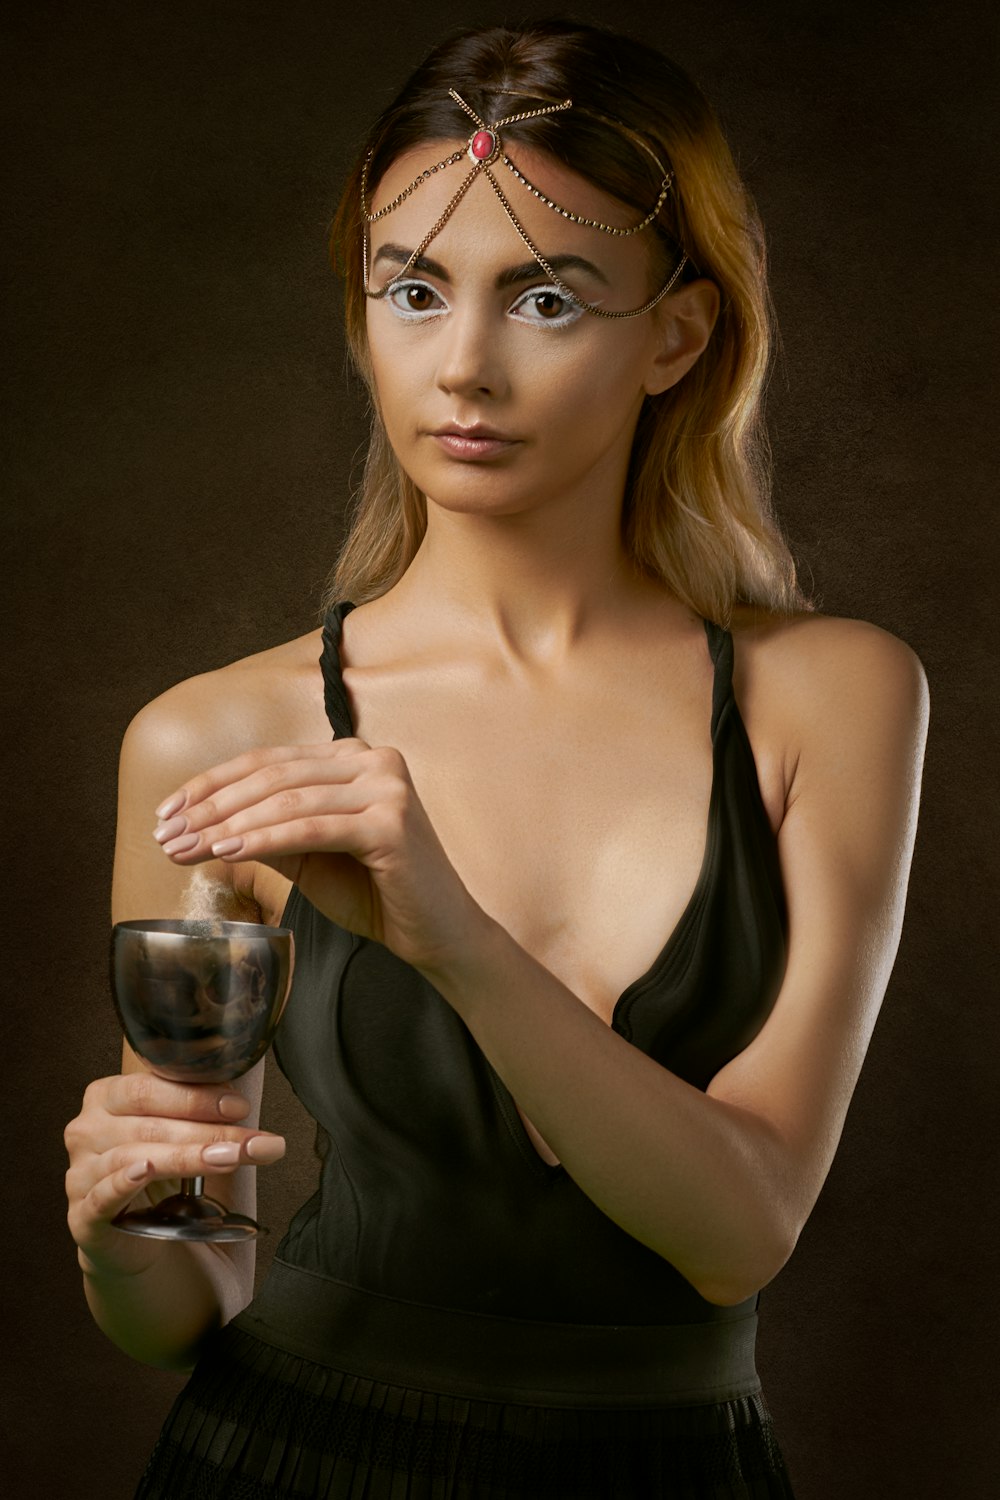 ワインのグラスを持って立っている女性